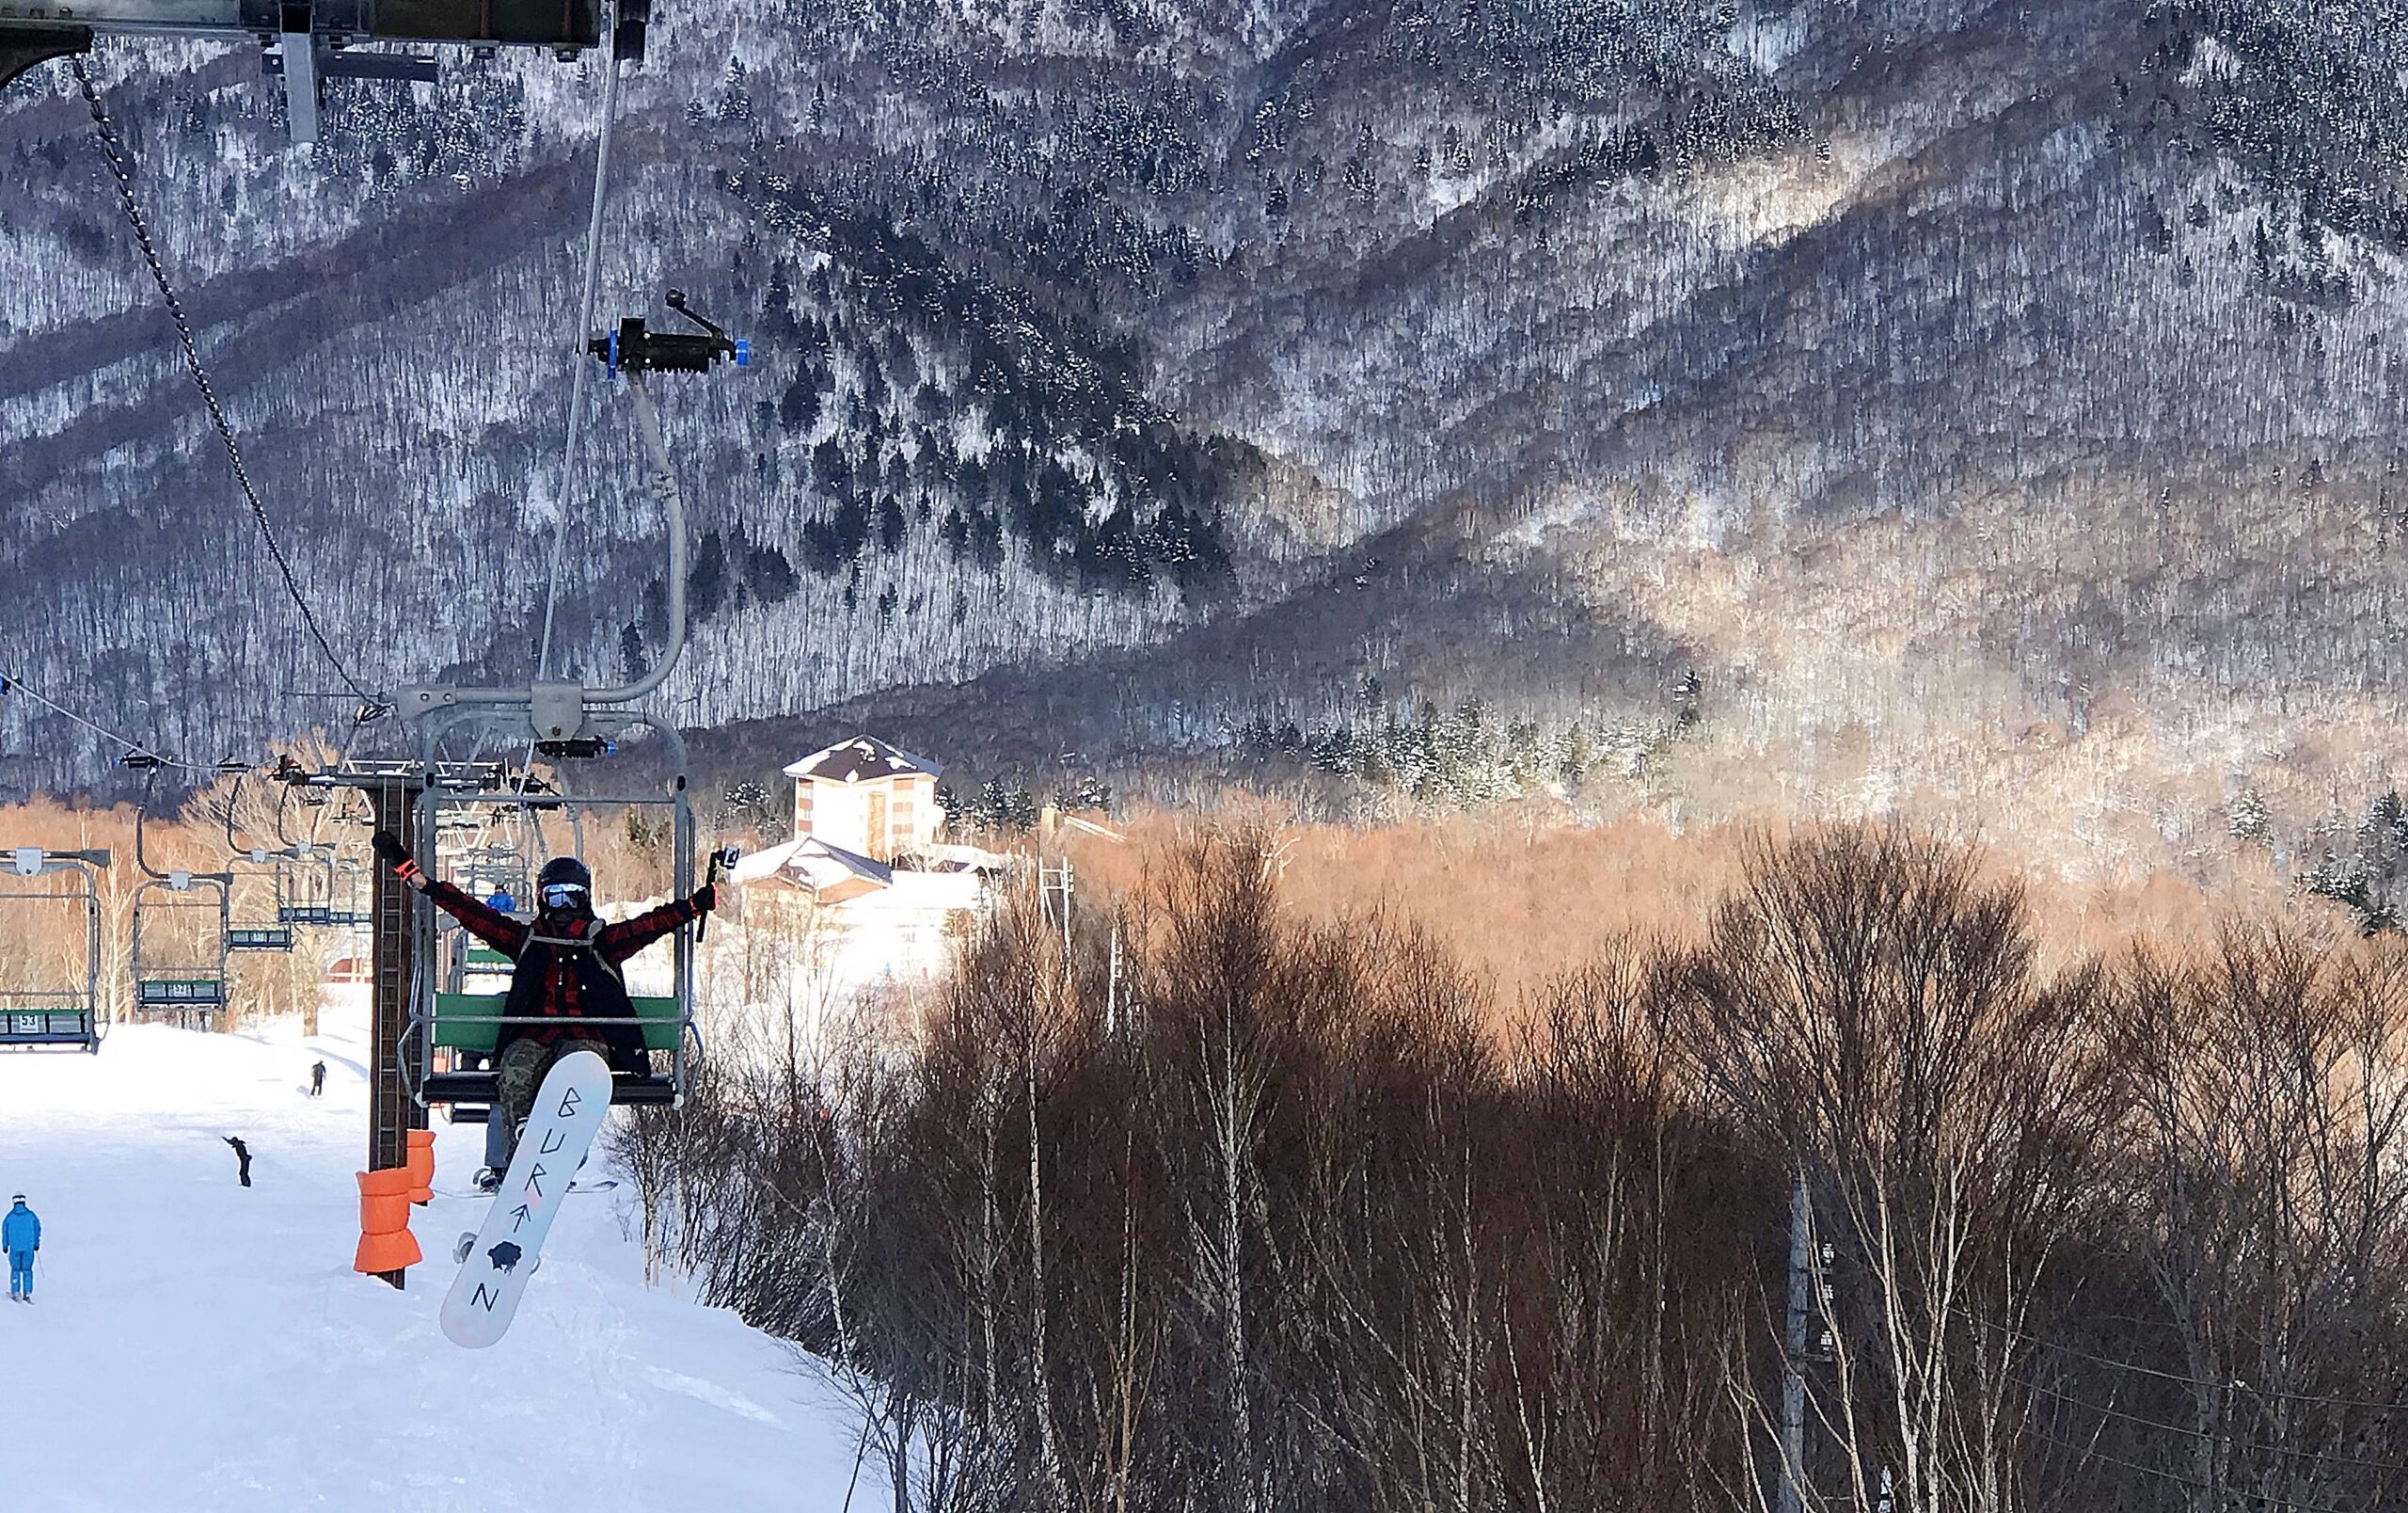 日本自助滑雪新手懶人包 女生踏上Snowboard滑雪旅行的心情紀錄 第一天學習穿雪鞋、上纜車、落葉飄 @。CJ夫人。